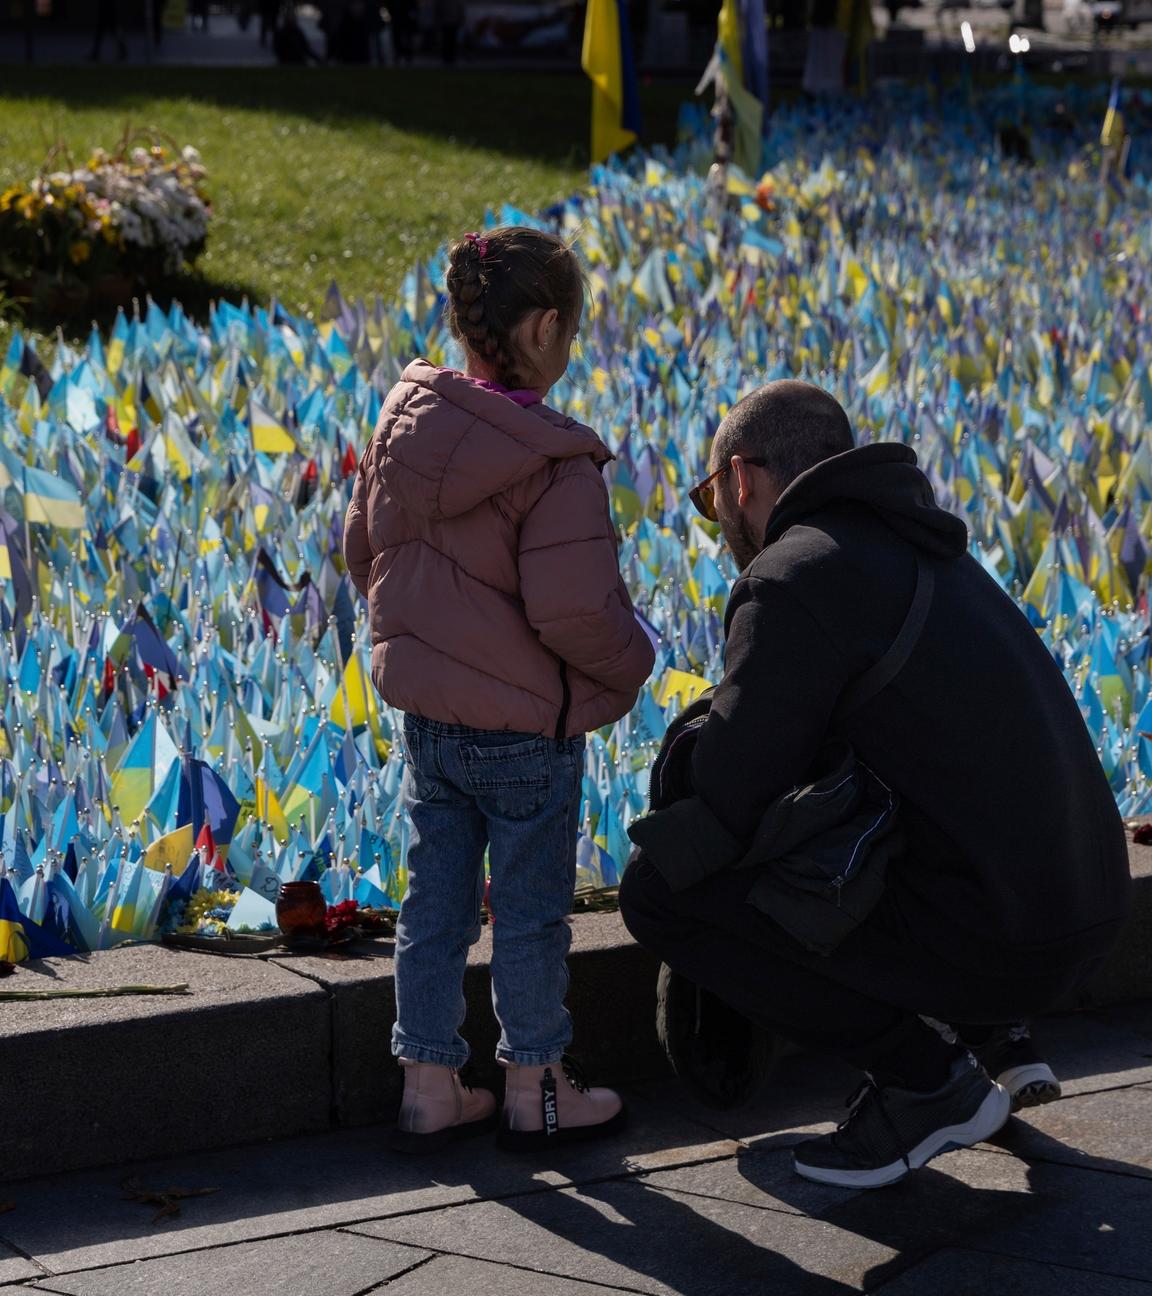 Auf dem Bild sind Familienmitglieder an einem Denkmal für ukrainische Soldaten zu sehen